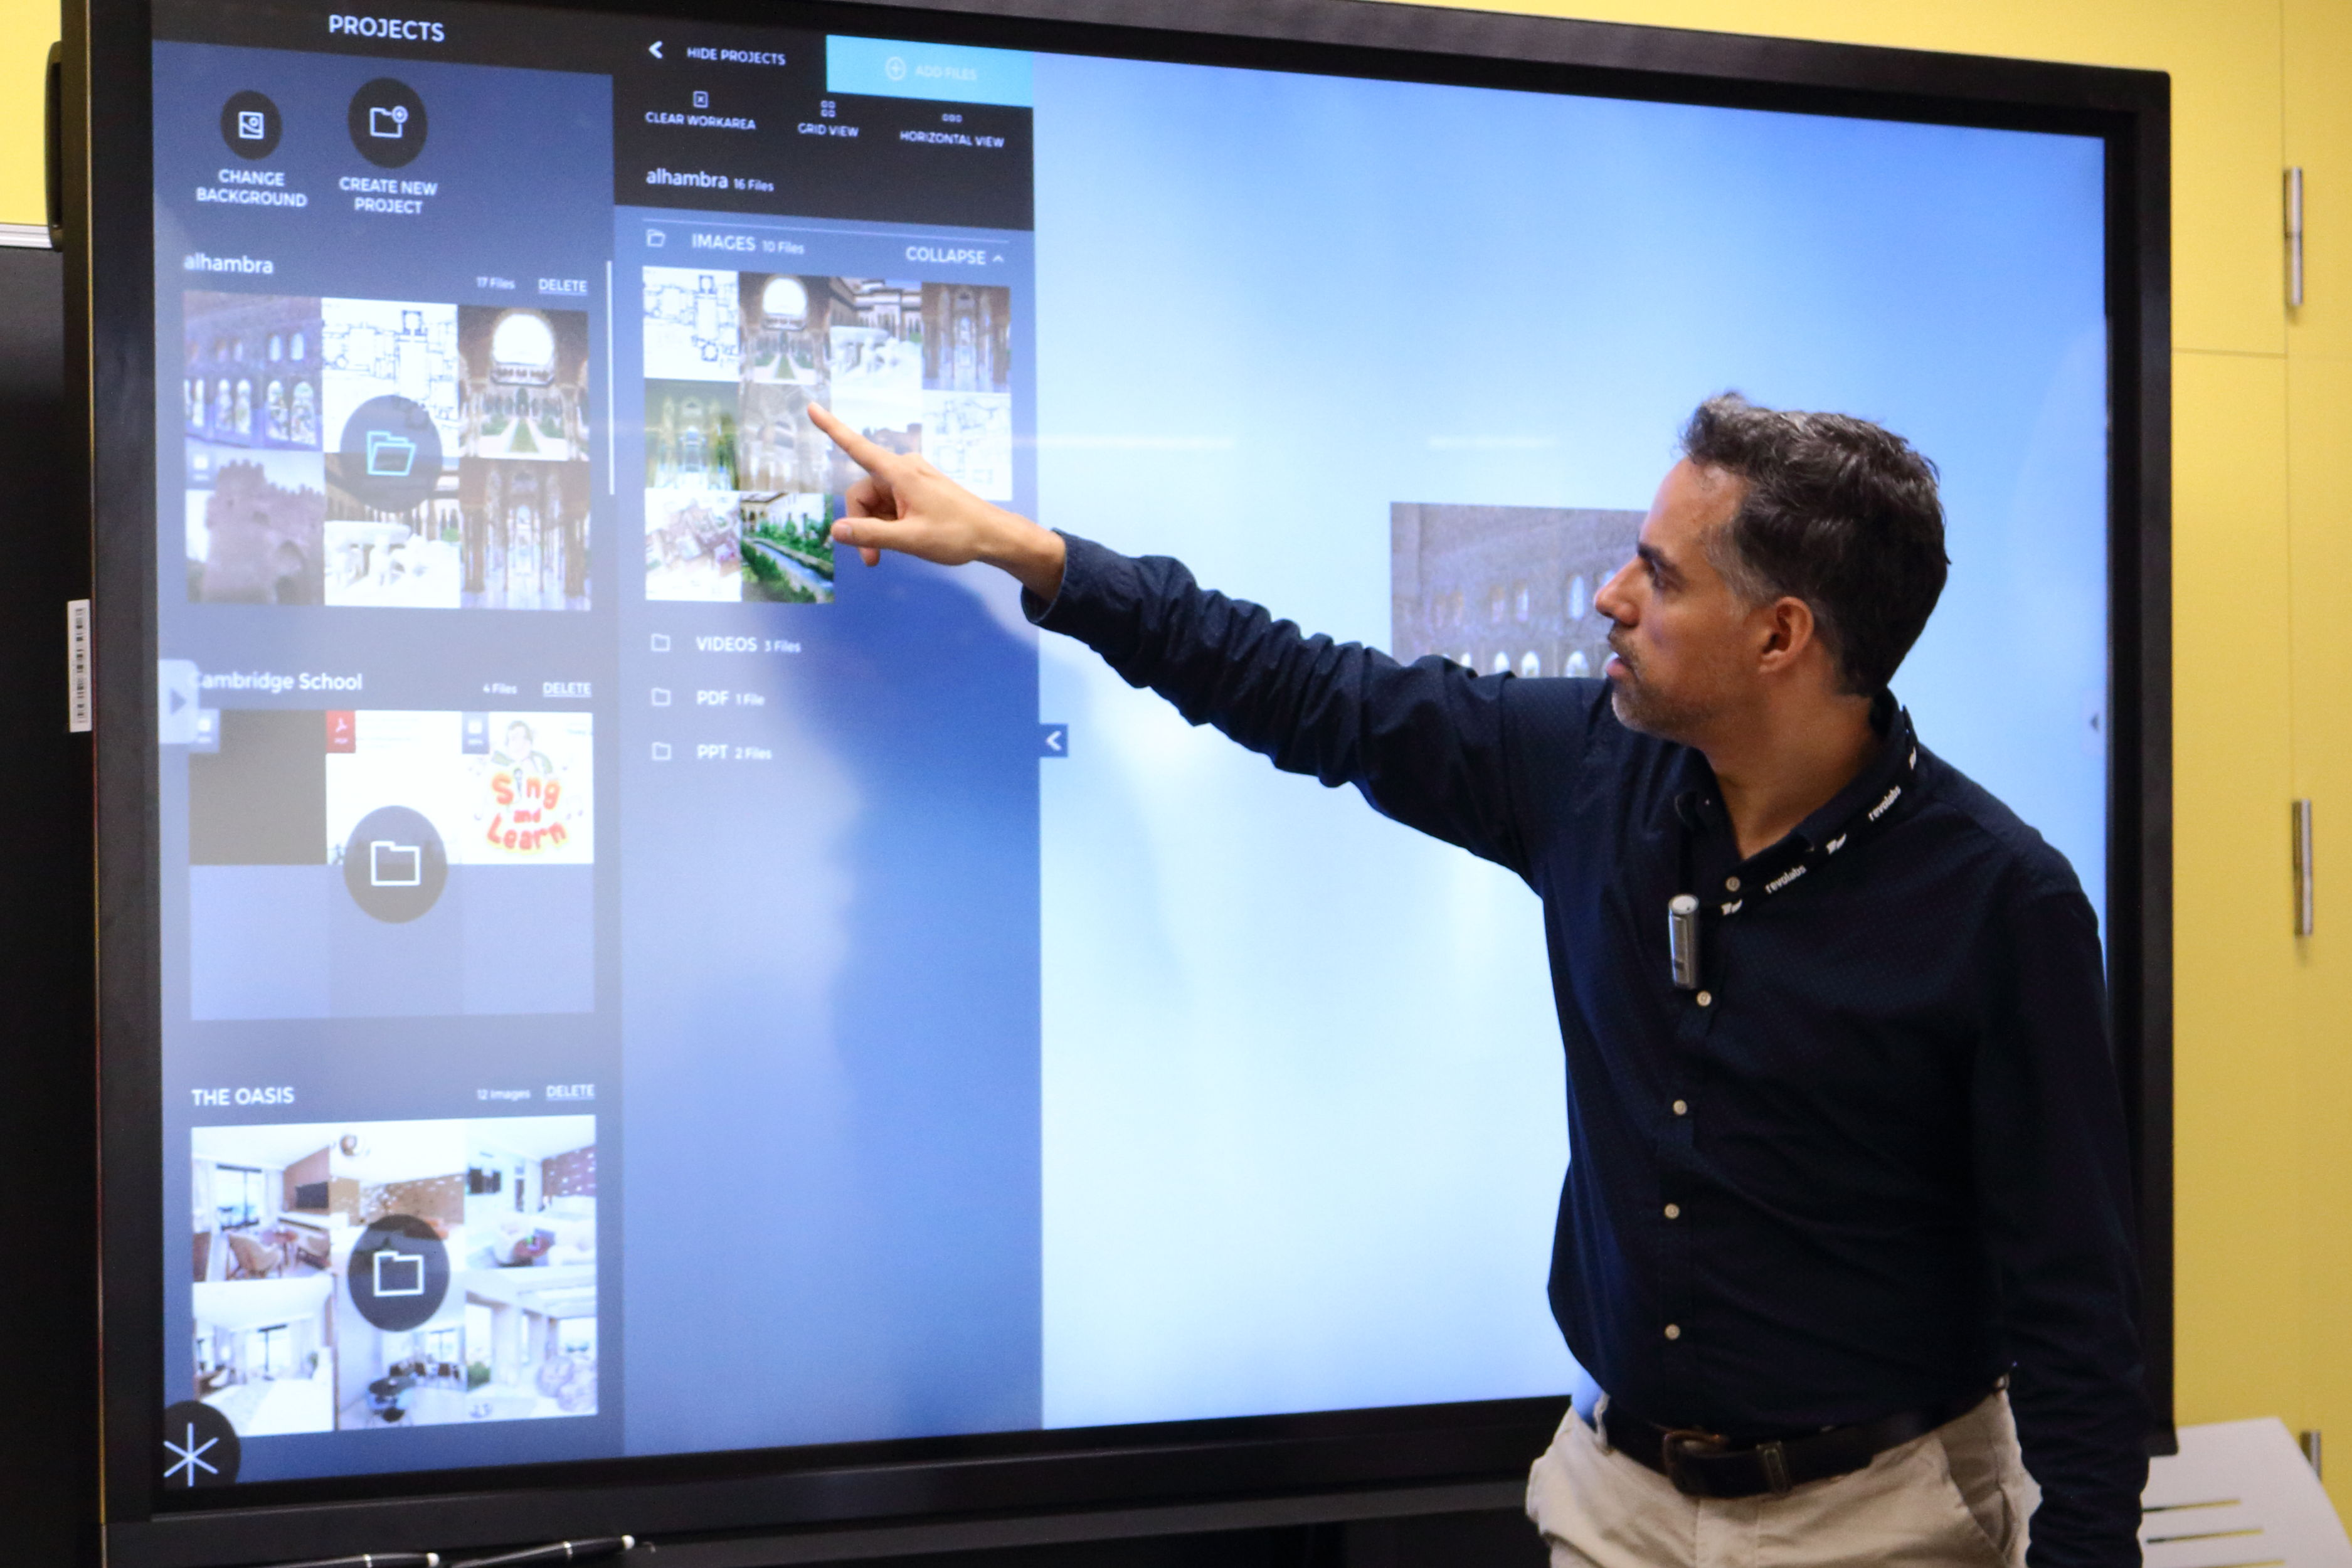 Una pizarra digital interactiva UltraHD de 84 pulgadas, nuevo recurso  docente en el campus – DUPO – Diario de la Universidad Pablo de Olavide